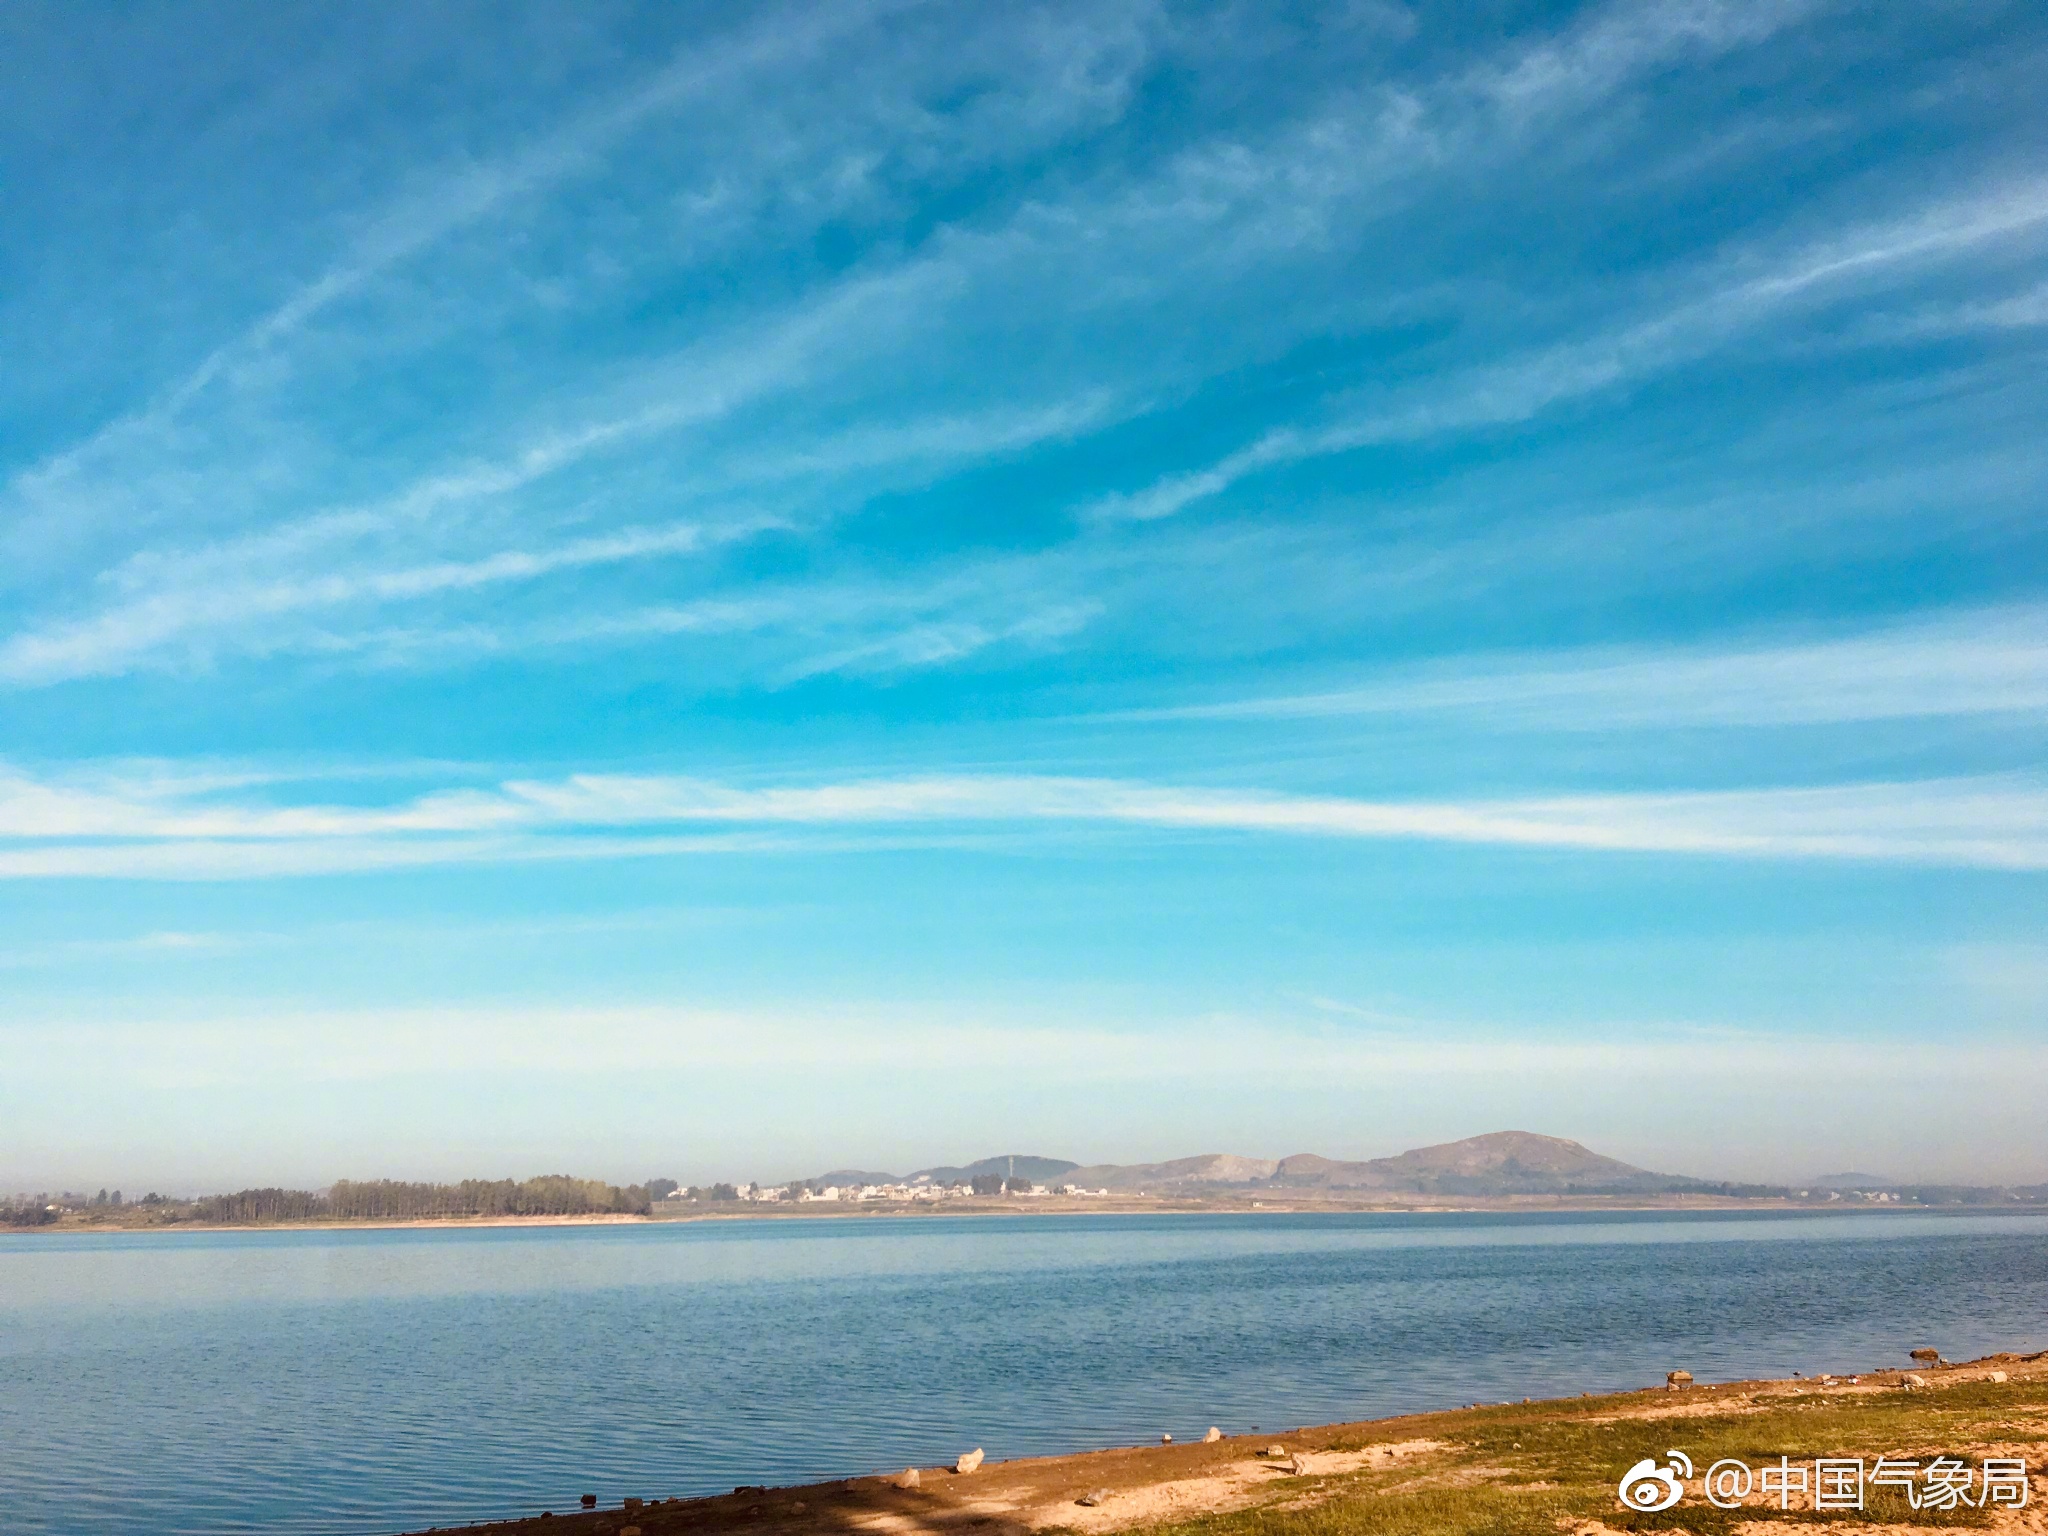 是否期待周日的清晨,就这么美的景象?坐标连云港赣榆塔山水库